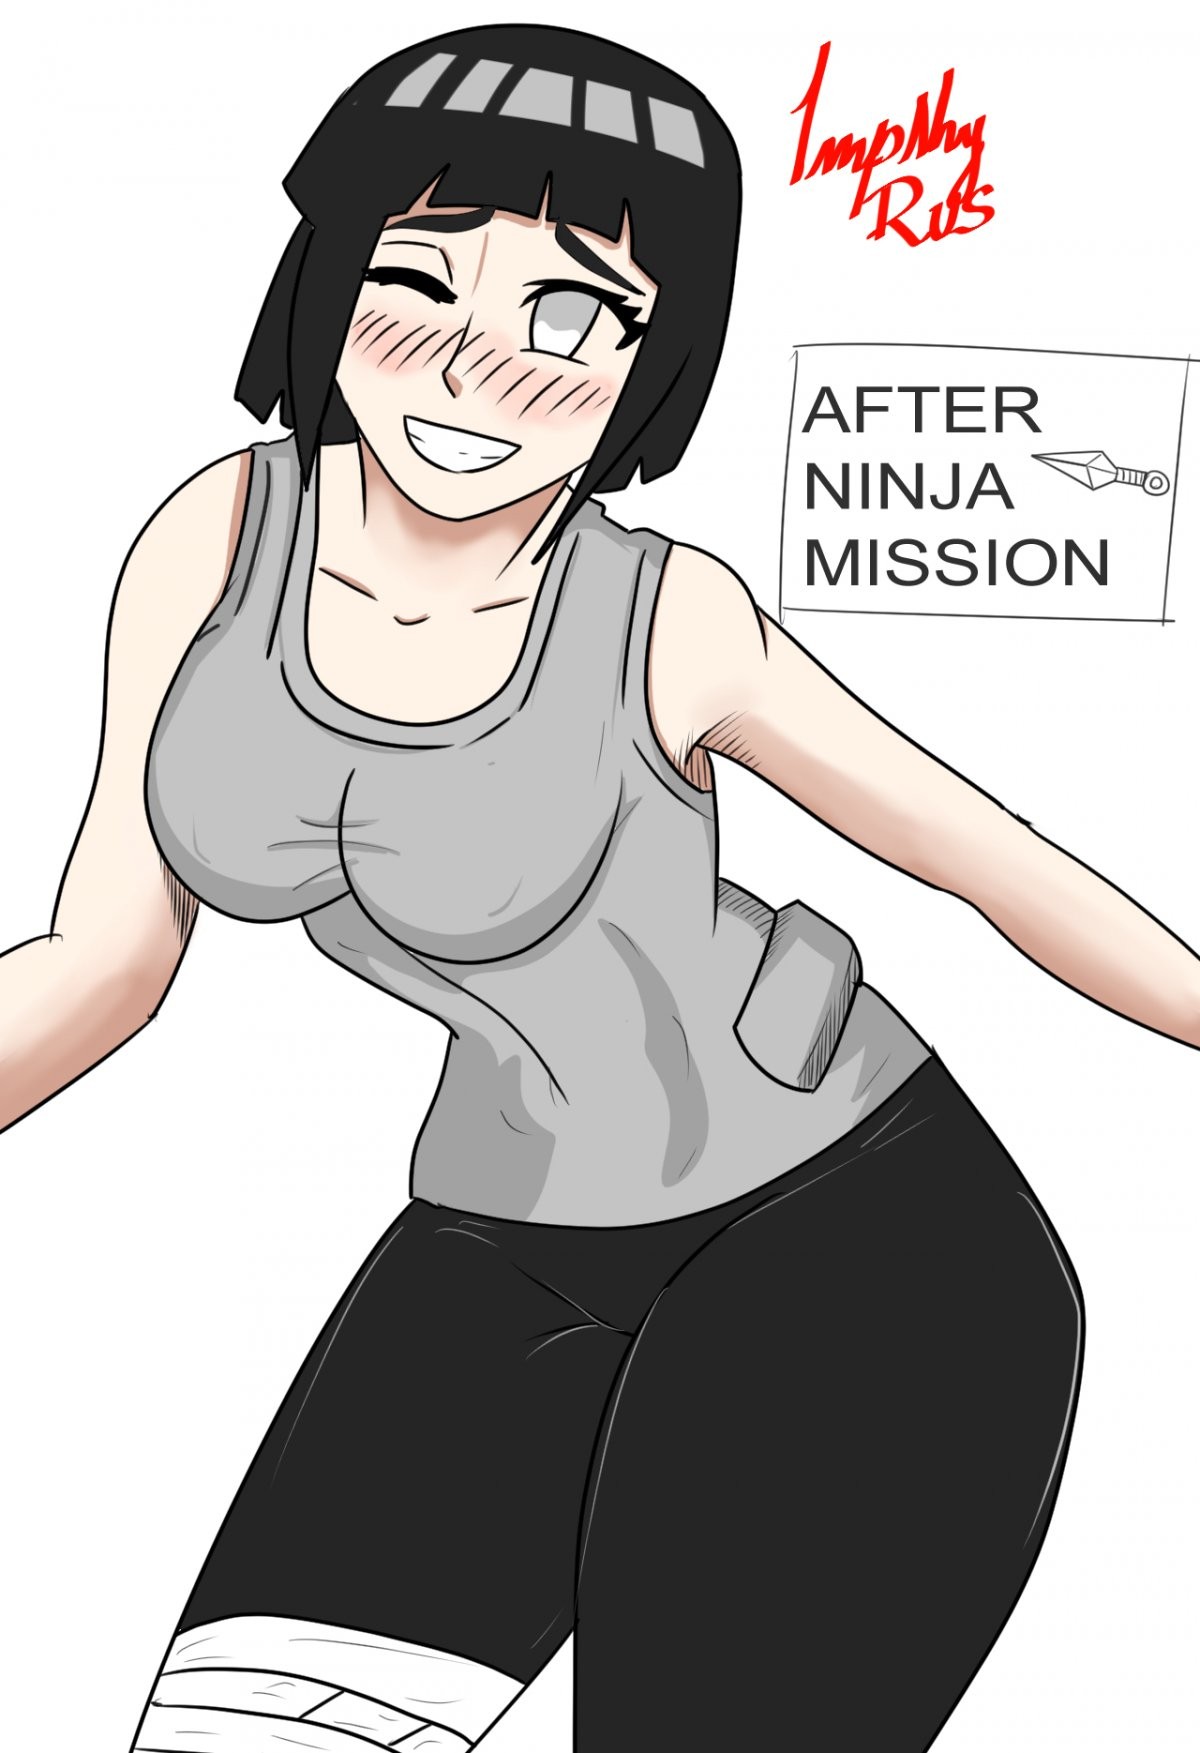 After ninja mission